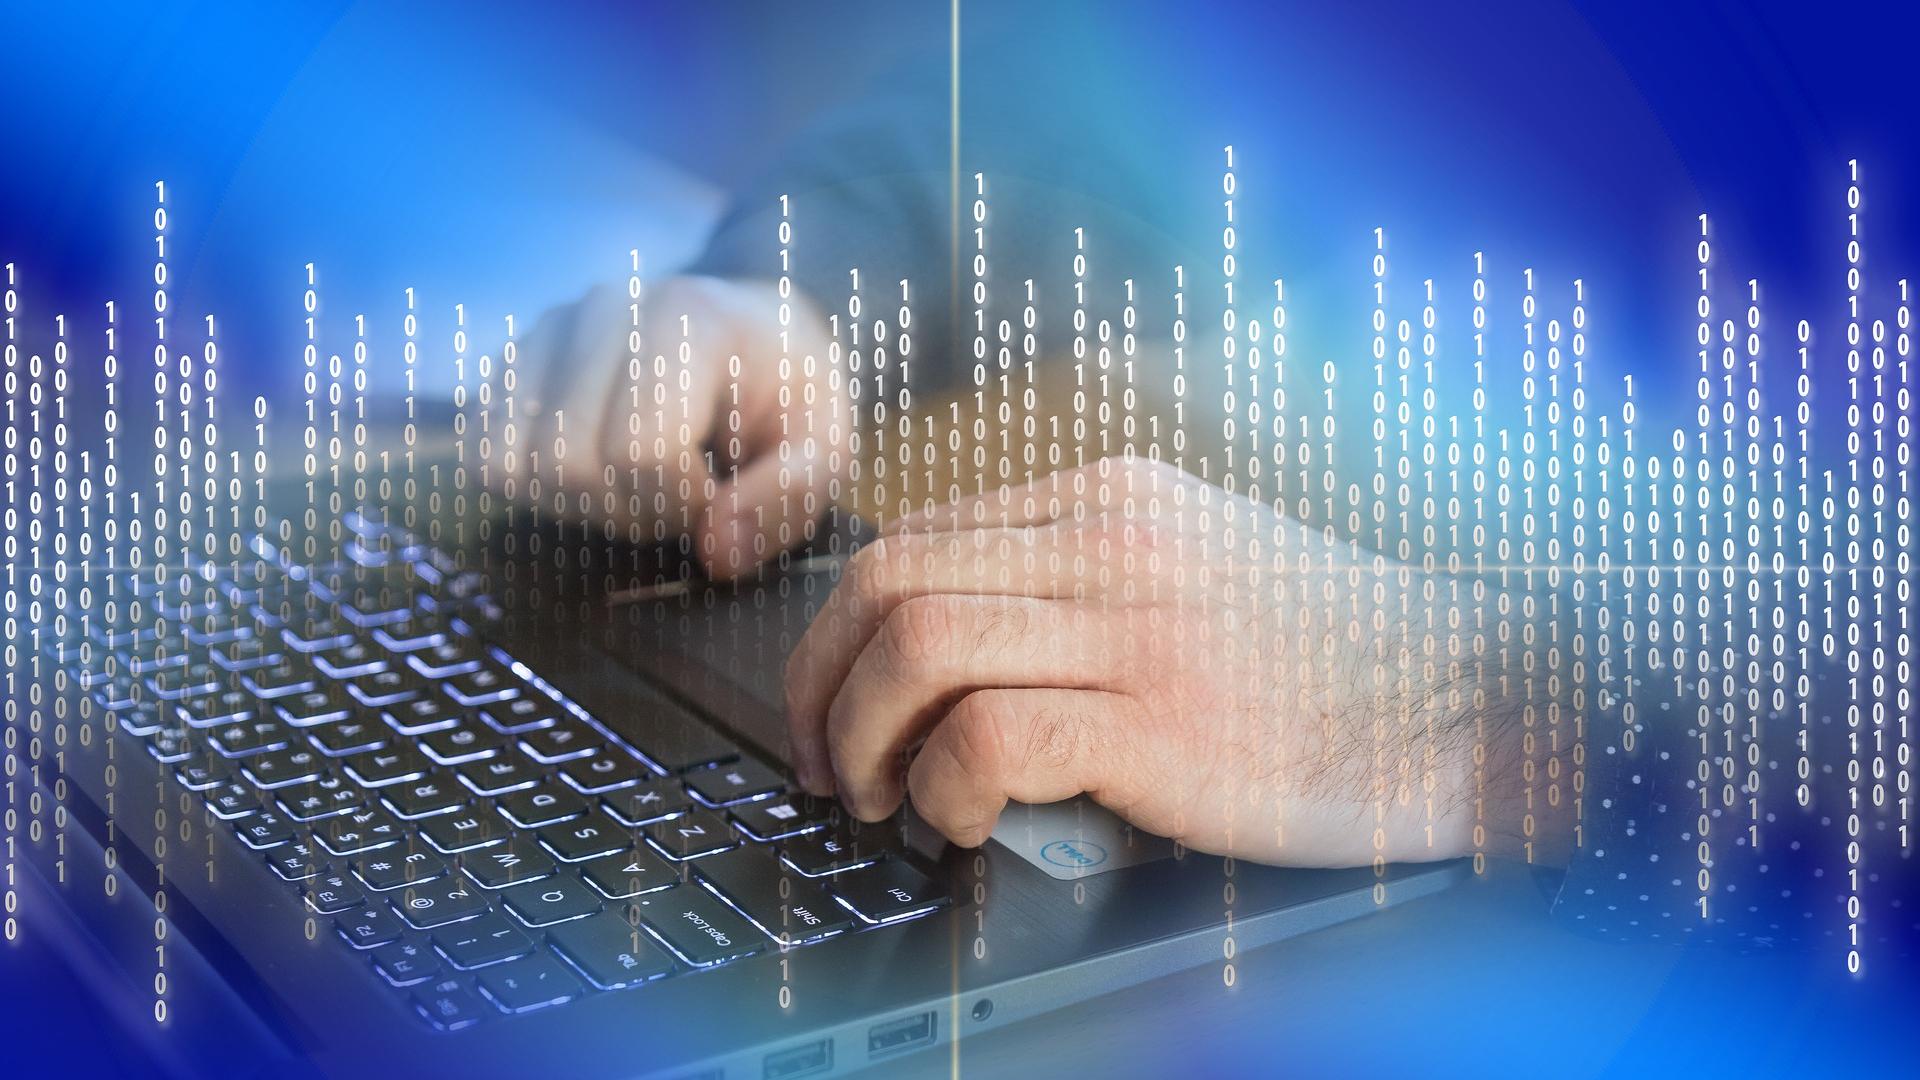 Männliche Hände auf der Tastatur eines Laptops mit Zahlen im Vordergrund.